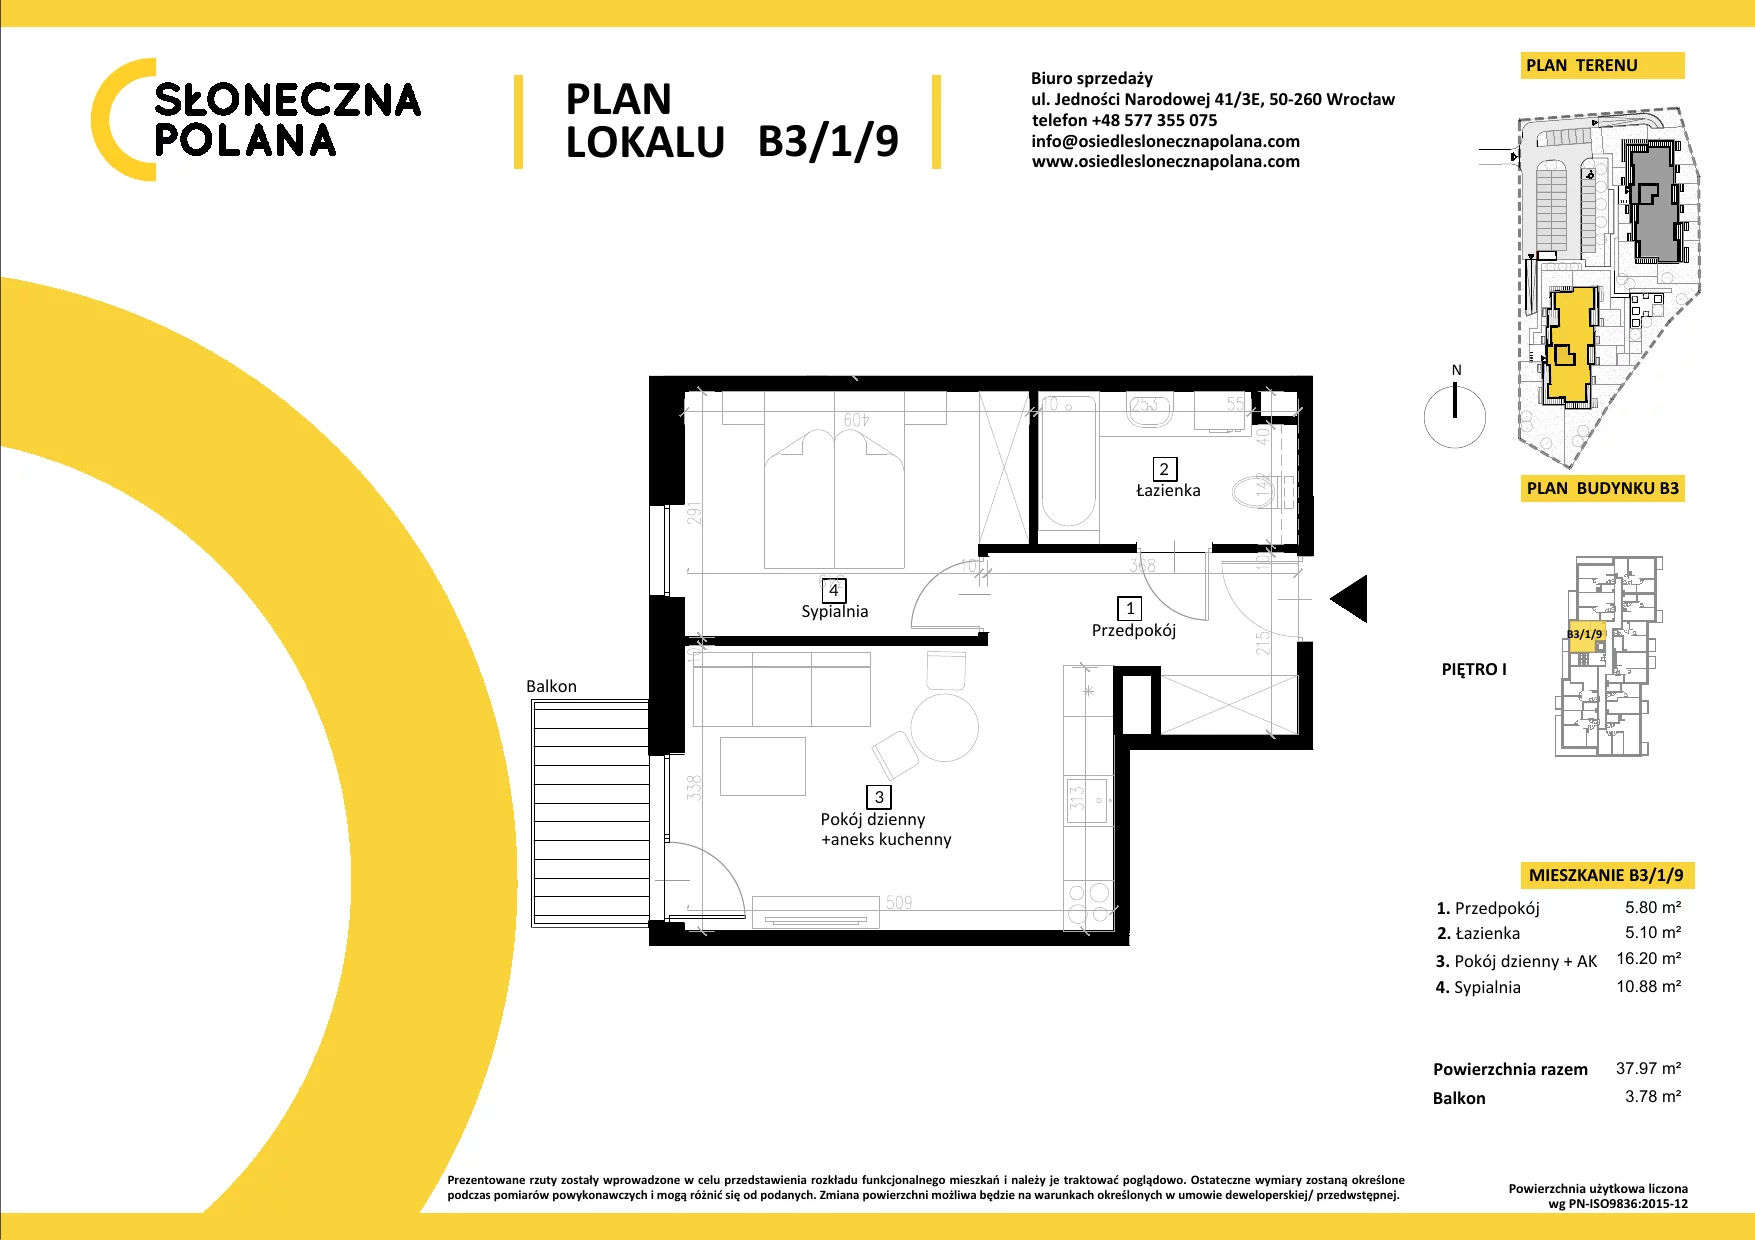 Mieszkanie 37,97 m², piętro 1, oferta nr B3/1/9, Słoneczna Polana, Kudowa-Zdrój, ul. Bluszczowa